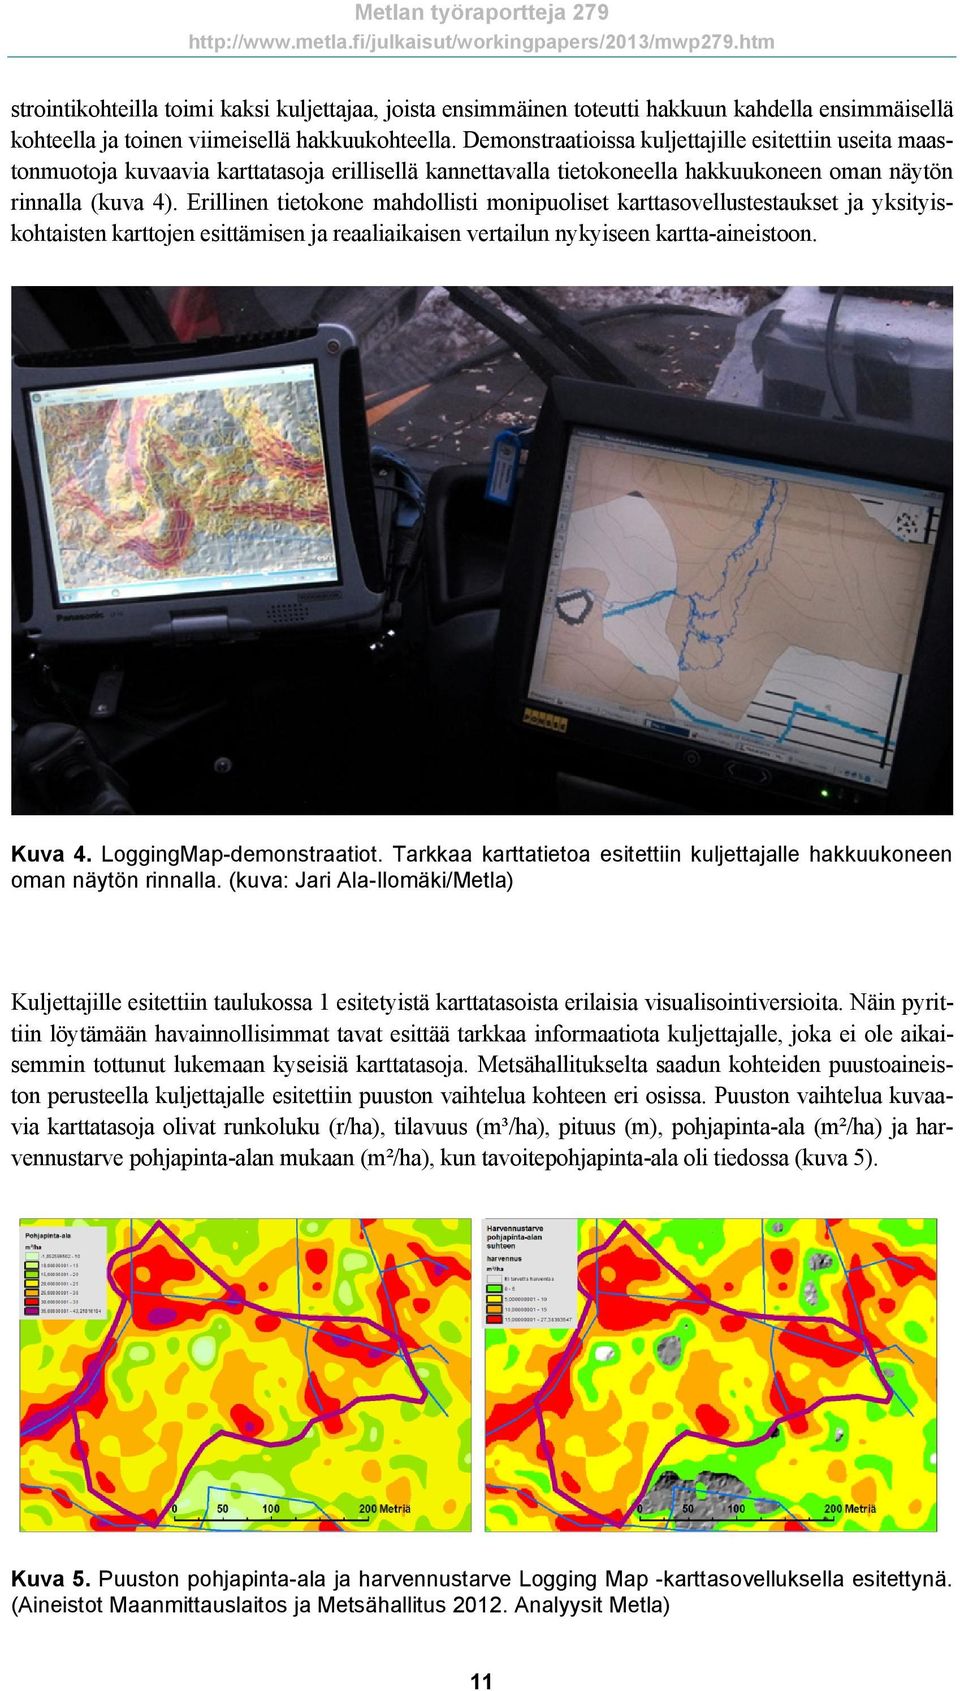 Erillinen tietokone mahdollisti monipuoliset karttasovellustestaukset ja yksityiskohtaisten karttojen esittämisen ja reaaliaikaisen vertailun nykyiseen kartta-aineistoon. Kuva 4.